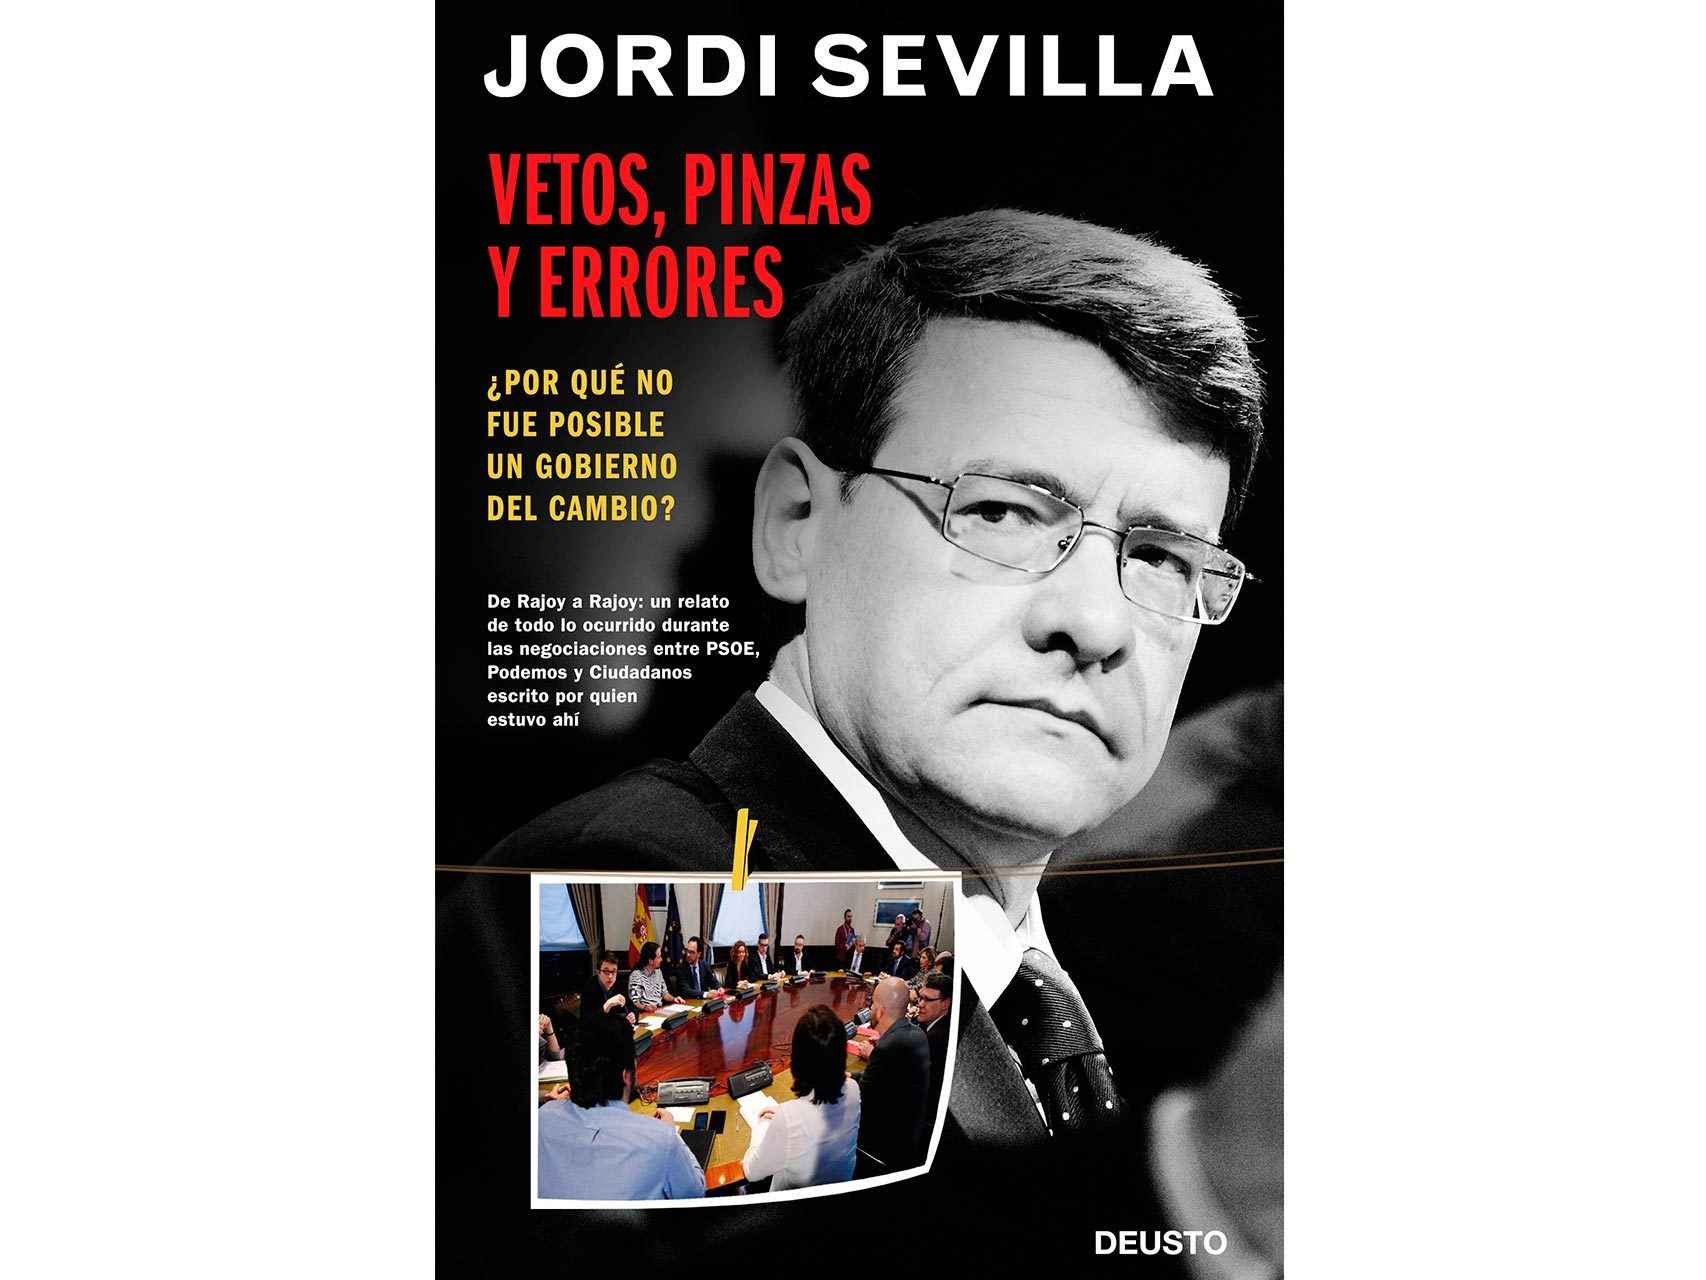 'Vetos, pinzas y errores', el libro donde Jordi Sevilla narra el pulso de Pedro Sánchez por llegar a la Moncloa.